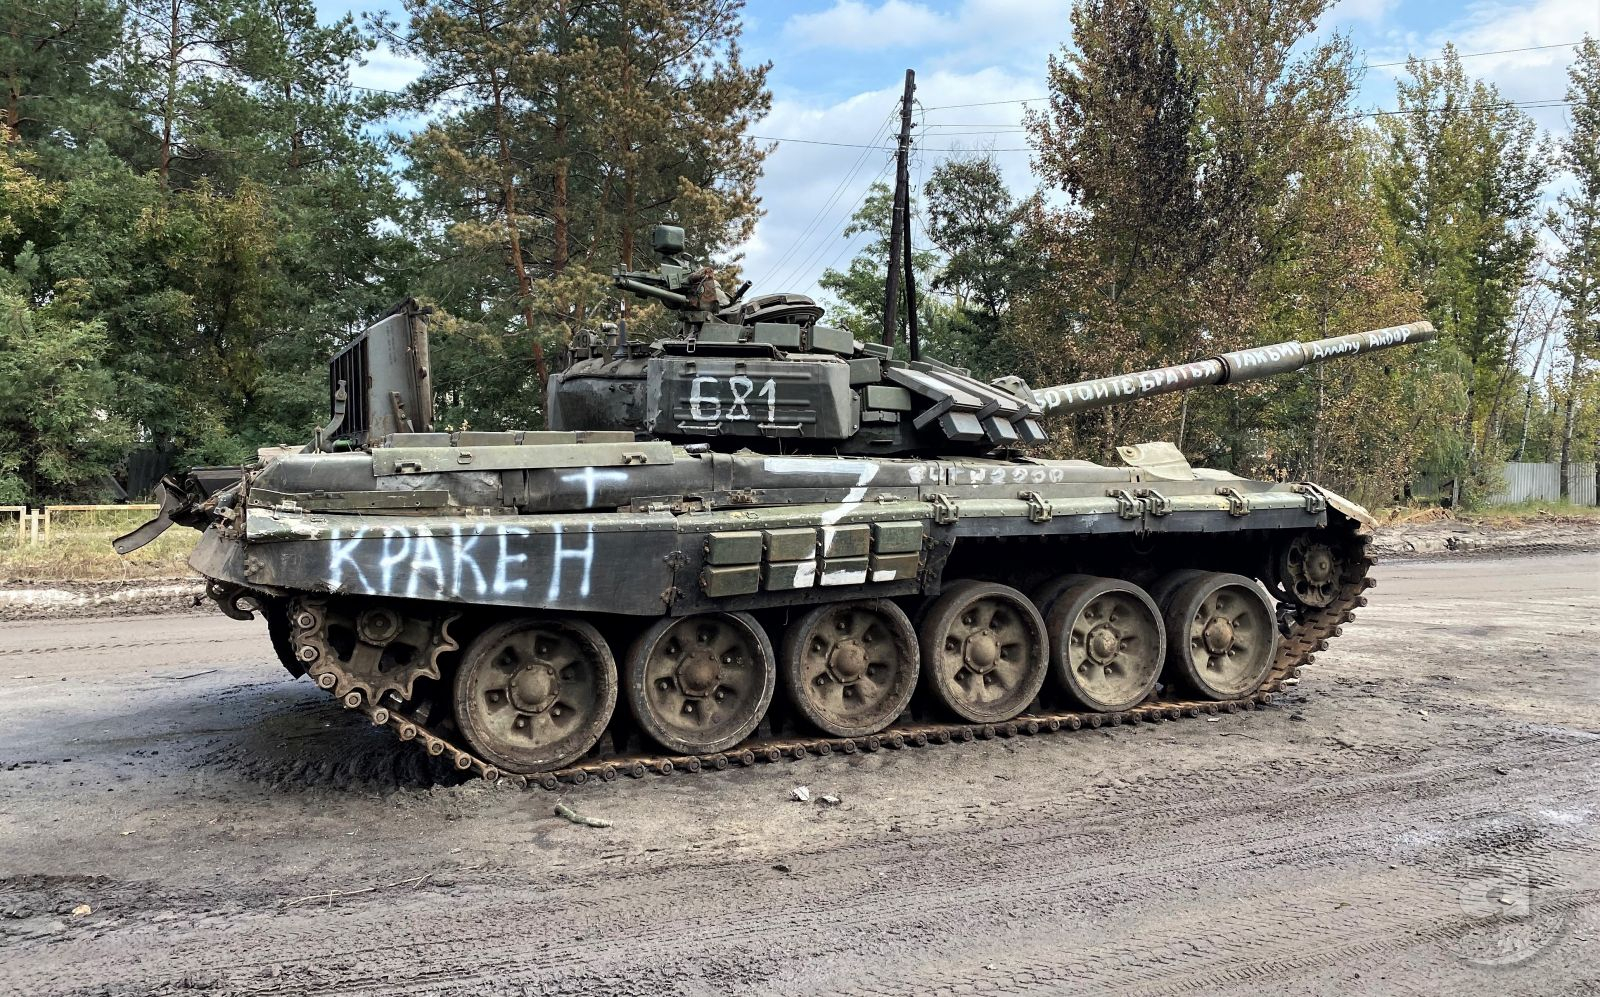 Кинутий посеред Ізюма російський танк, на якому під час контрнаступу ЗСУ намагалися втекти окупанти. Харківський спецпідрозділ «Кракен» залишив на танку свою назву